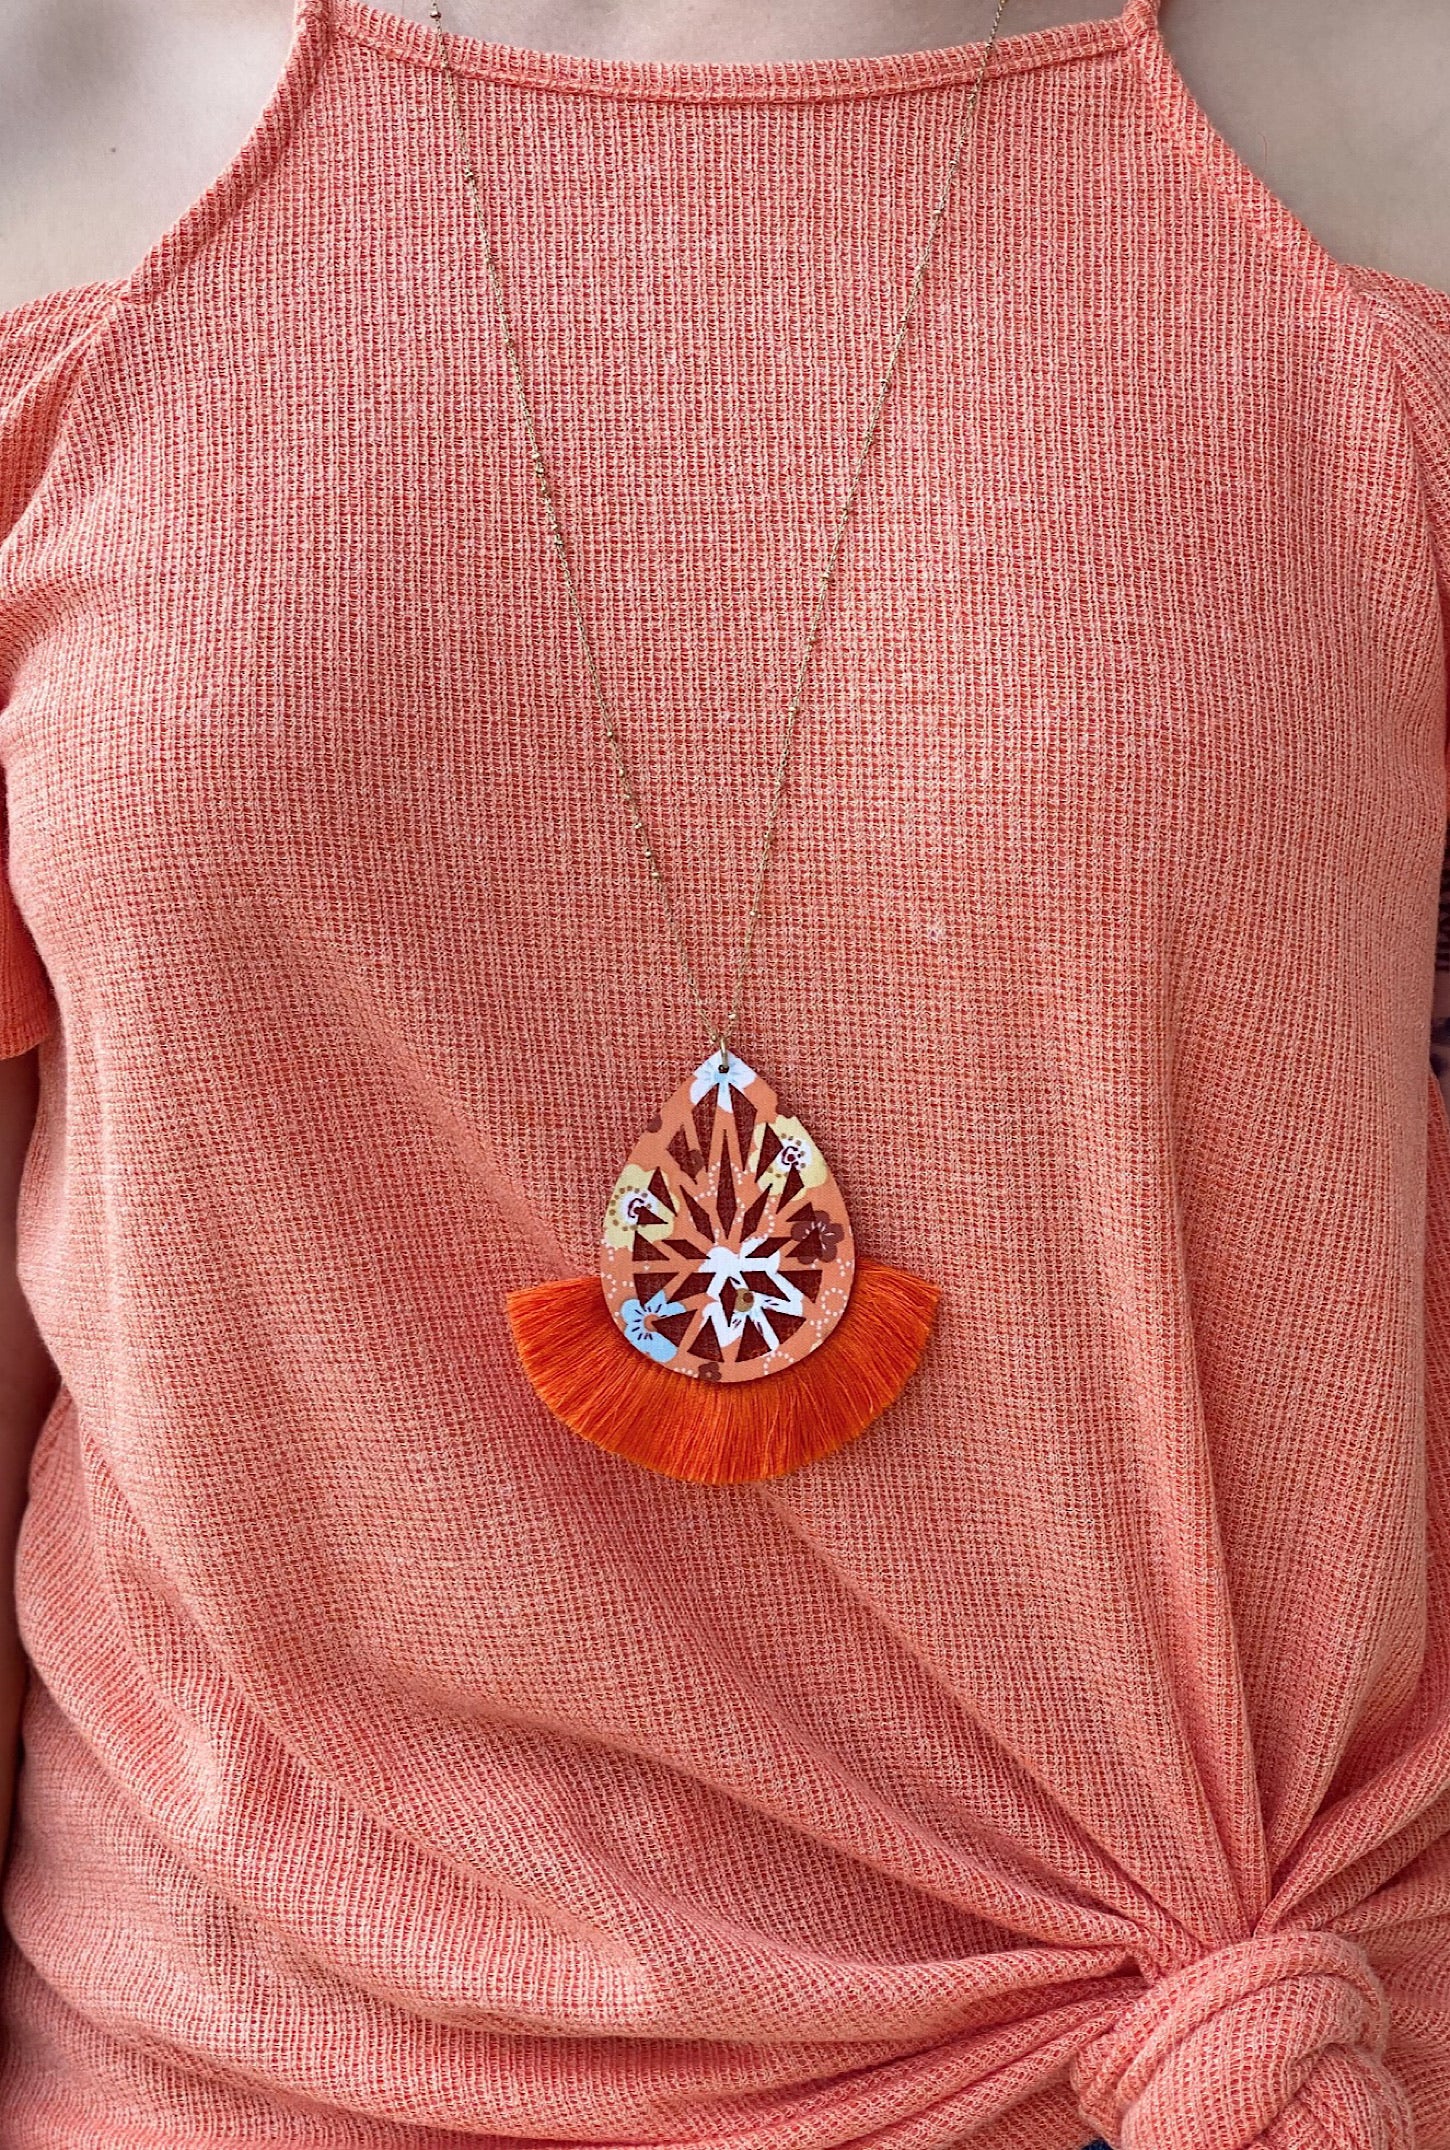 Orange Floral Wood Necklace - Bellamie Boutique